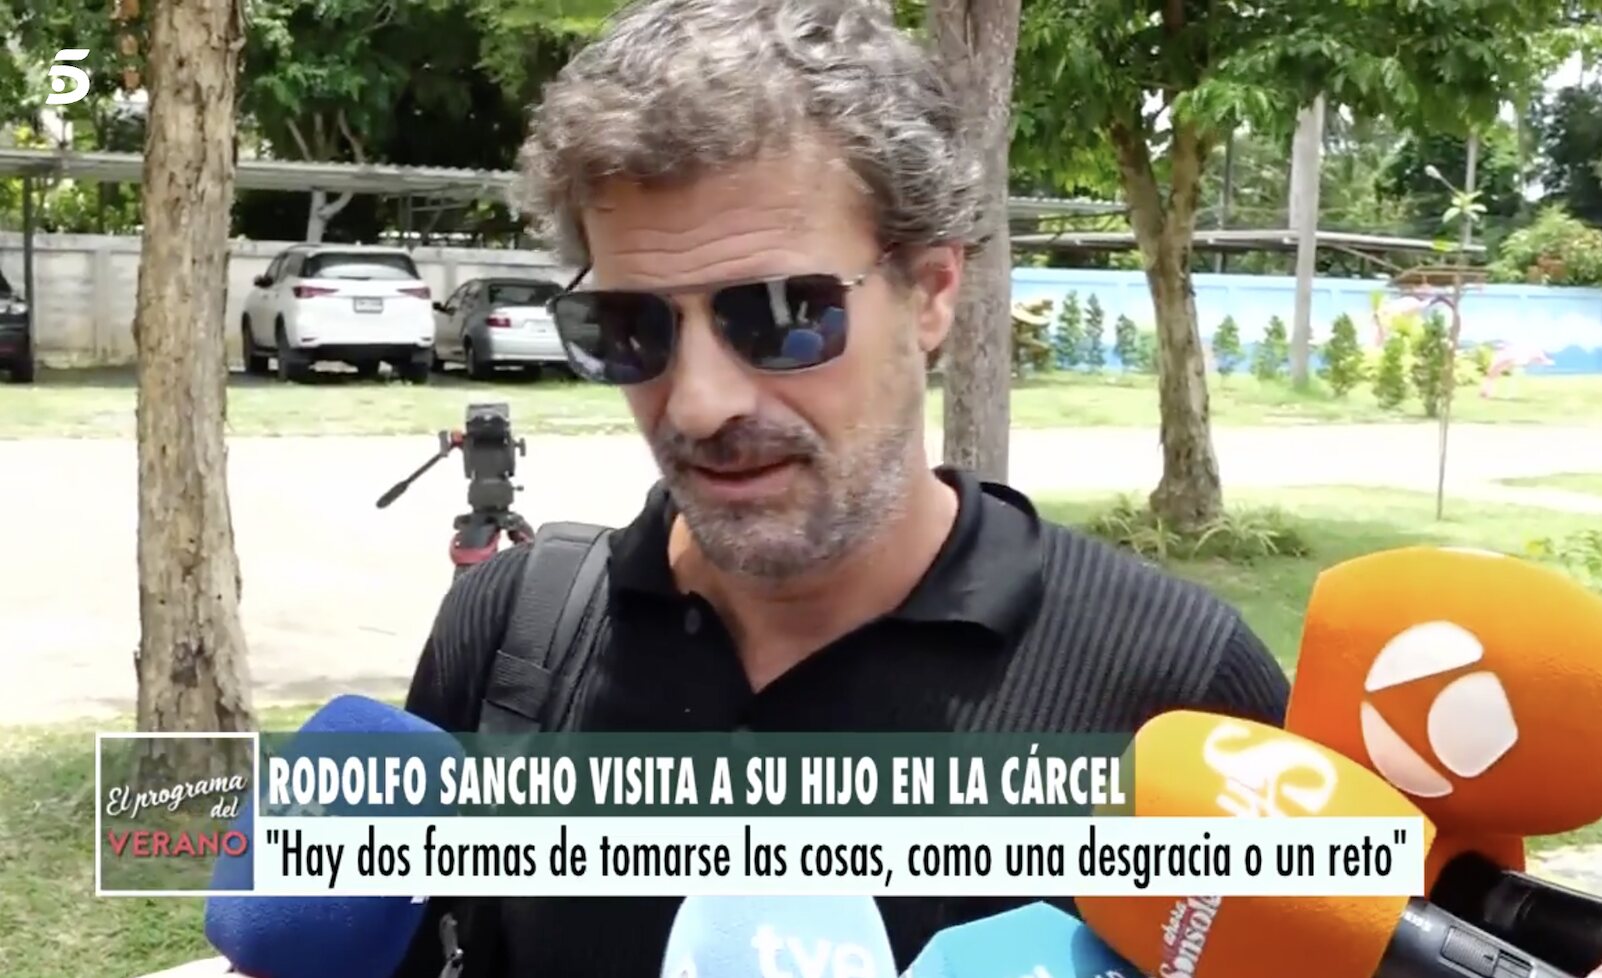 Rodolfo Sancho habla con los medios tras visitar a su hijo en prisión/ Foto: telecinco.es